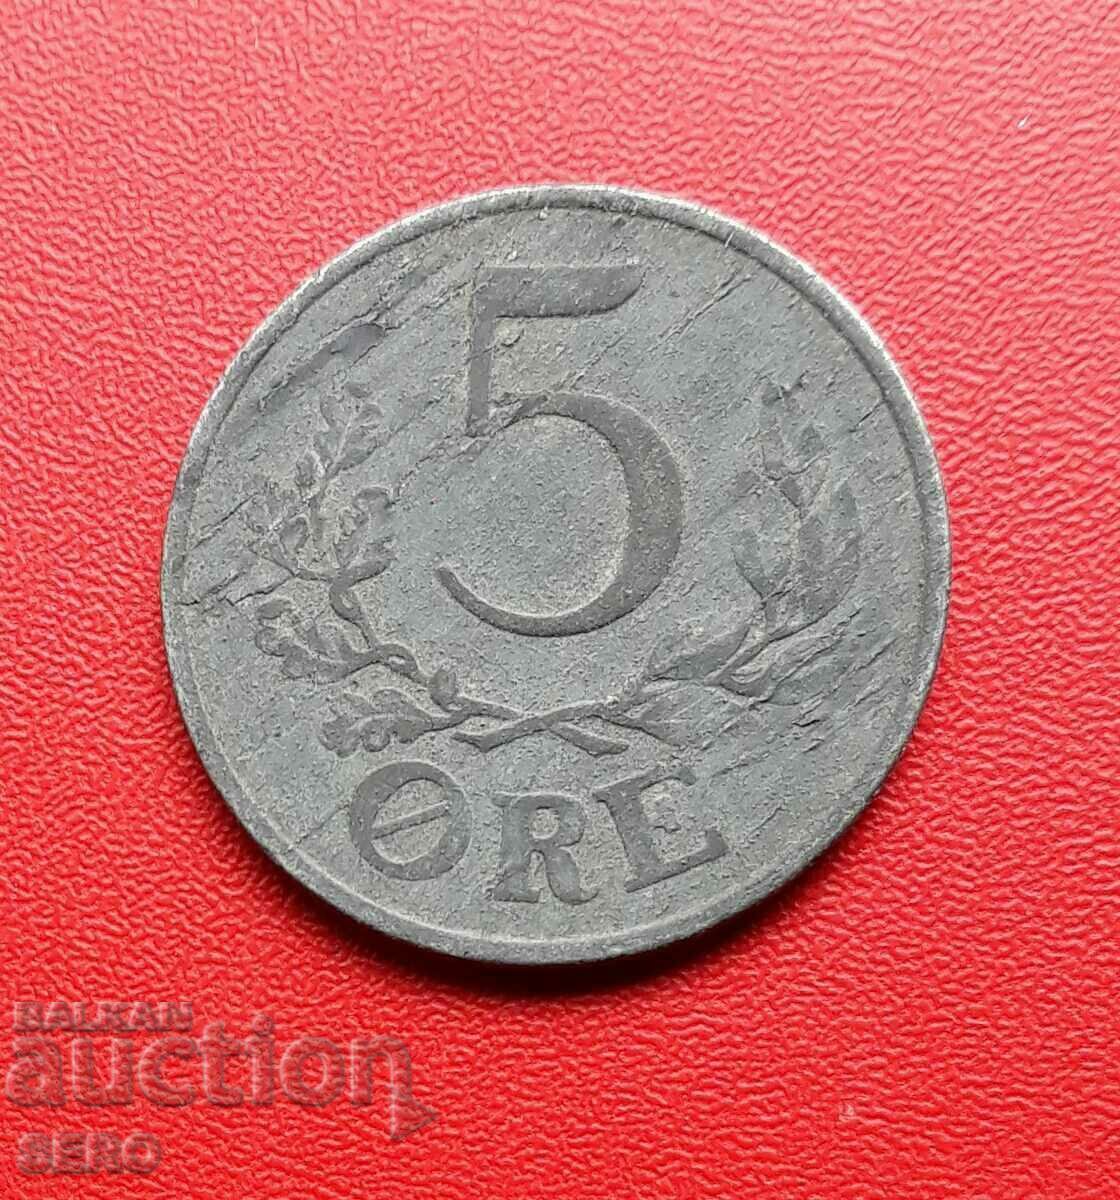 Denmark-5 yore 1945-small edition